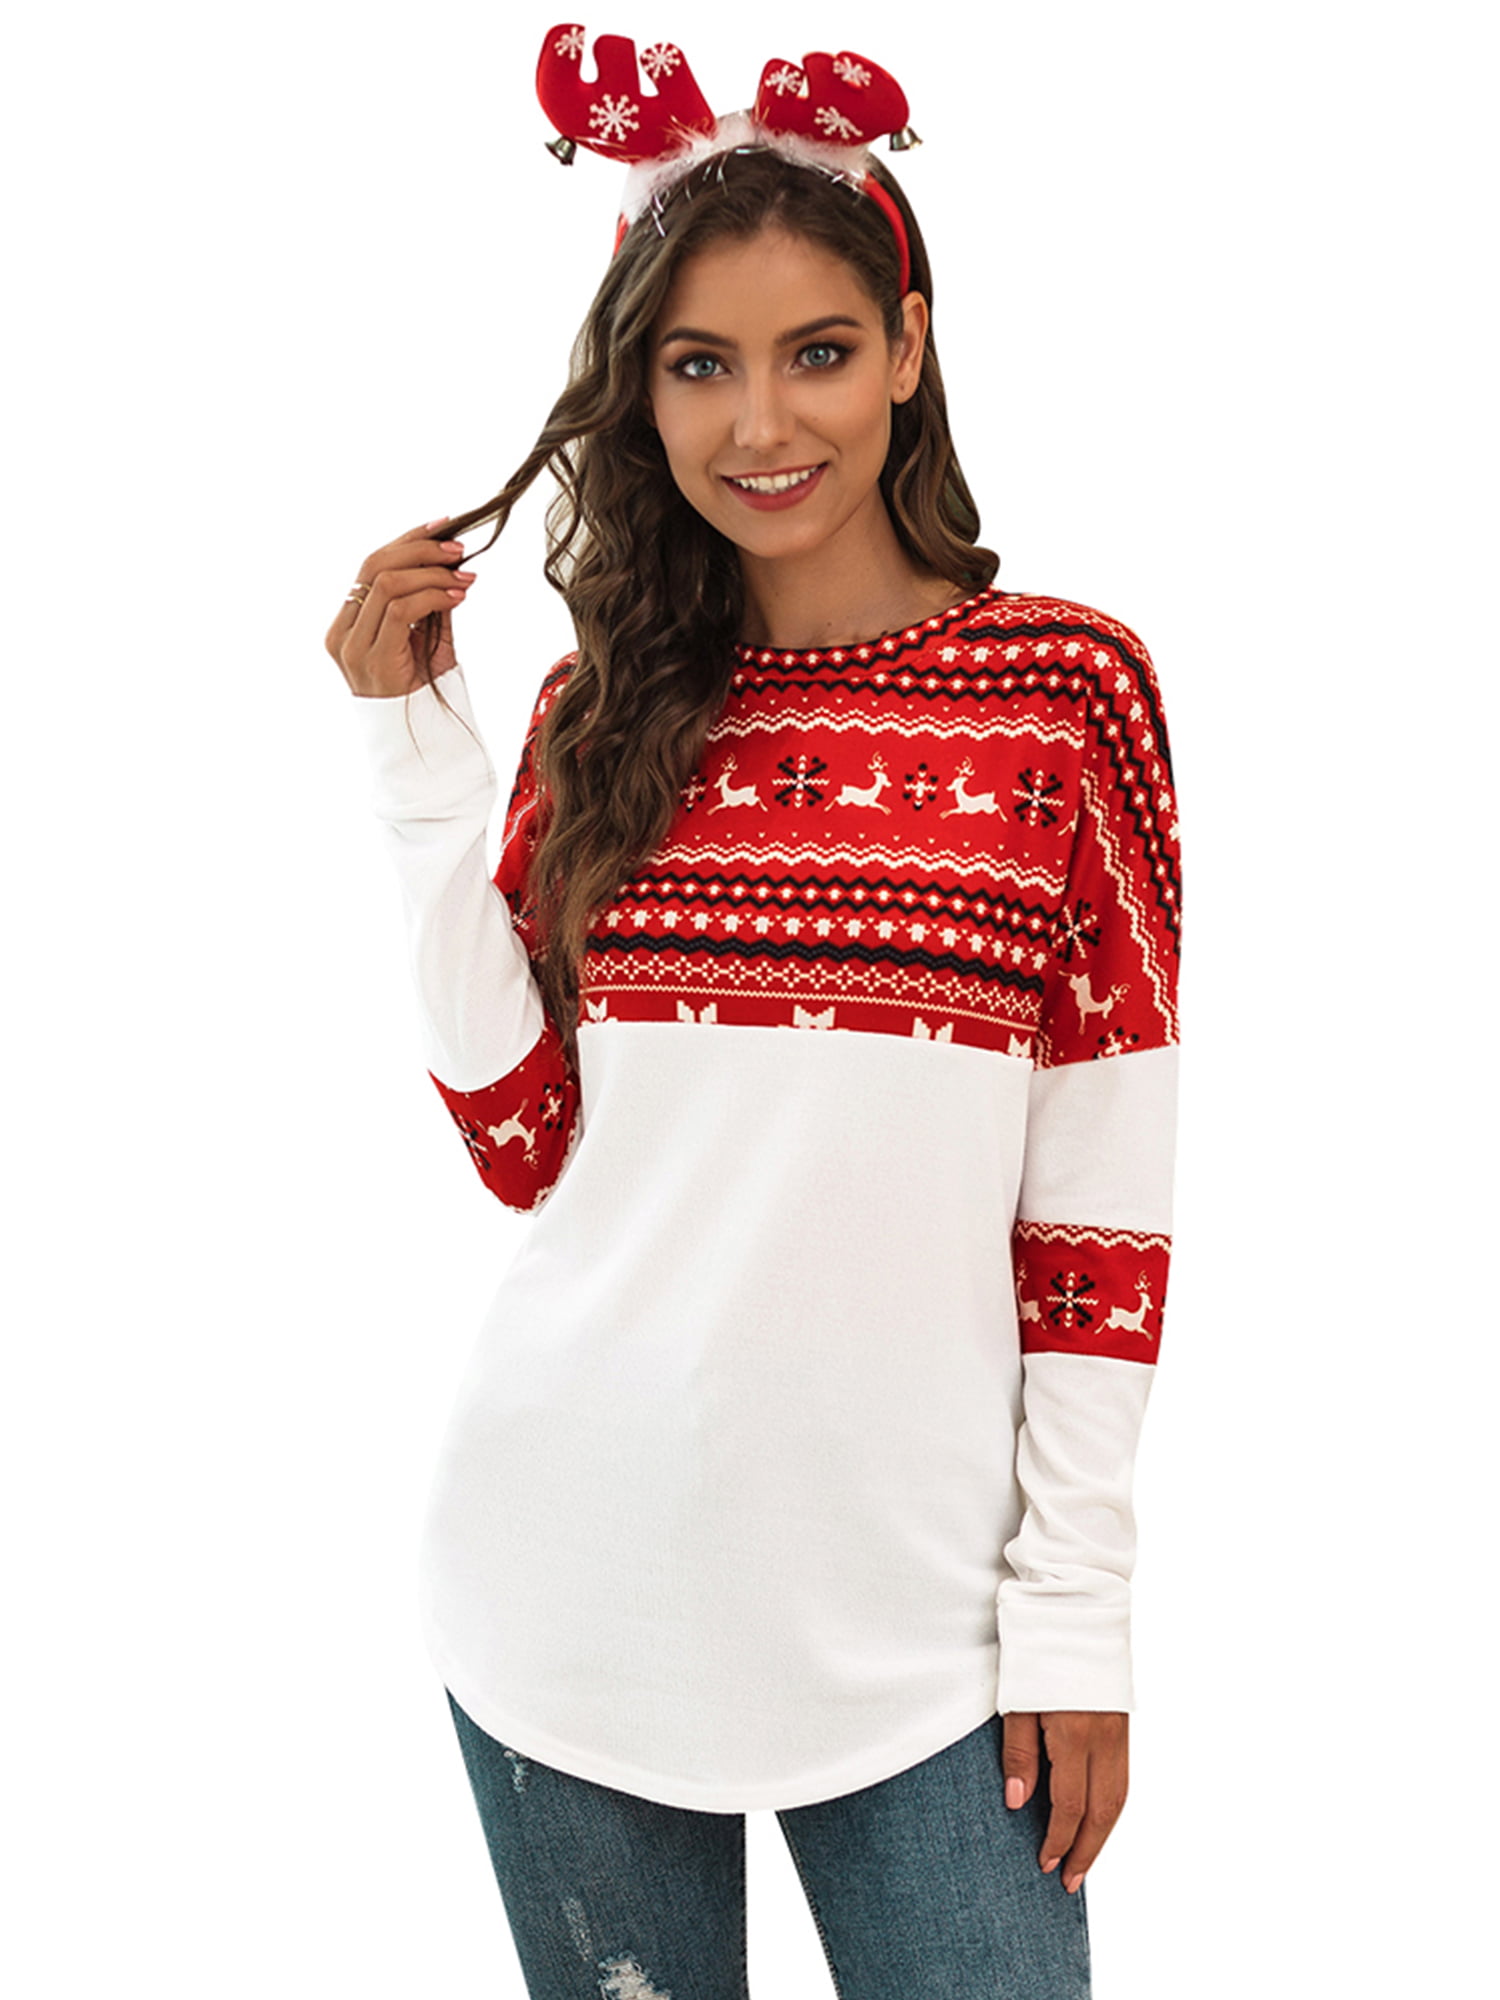 Christmas Tunic Shirts for Women Christmas Snowflake Christmas Tree Gradient Long Sleeve Shirts Casual Crewneck Tops